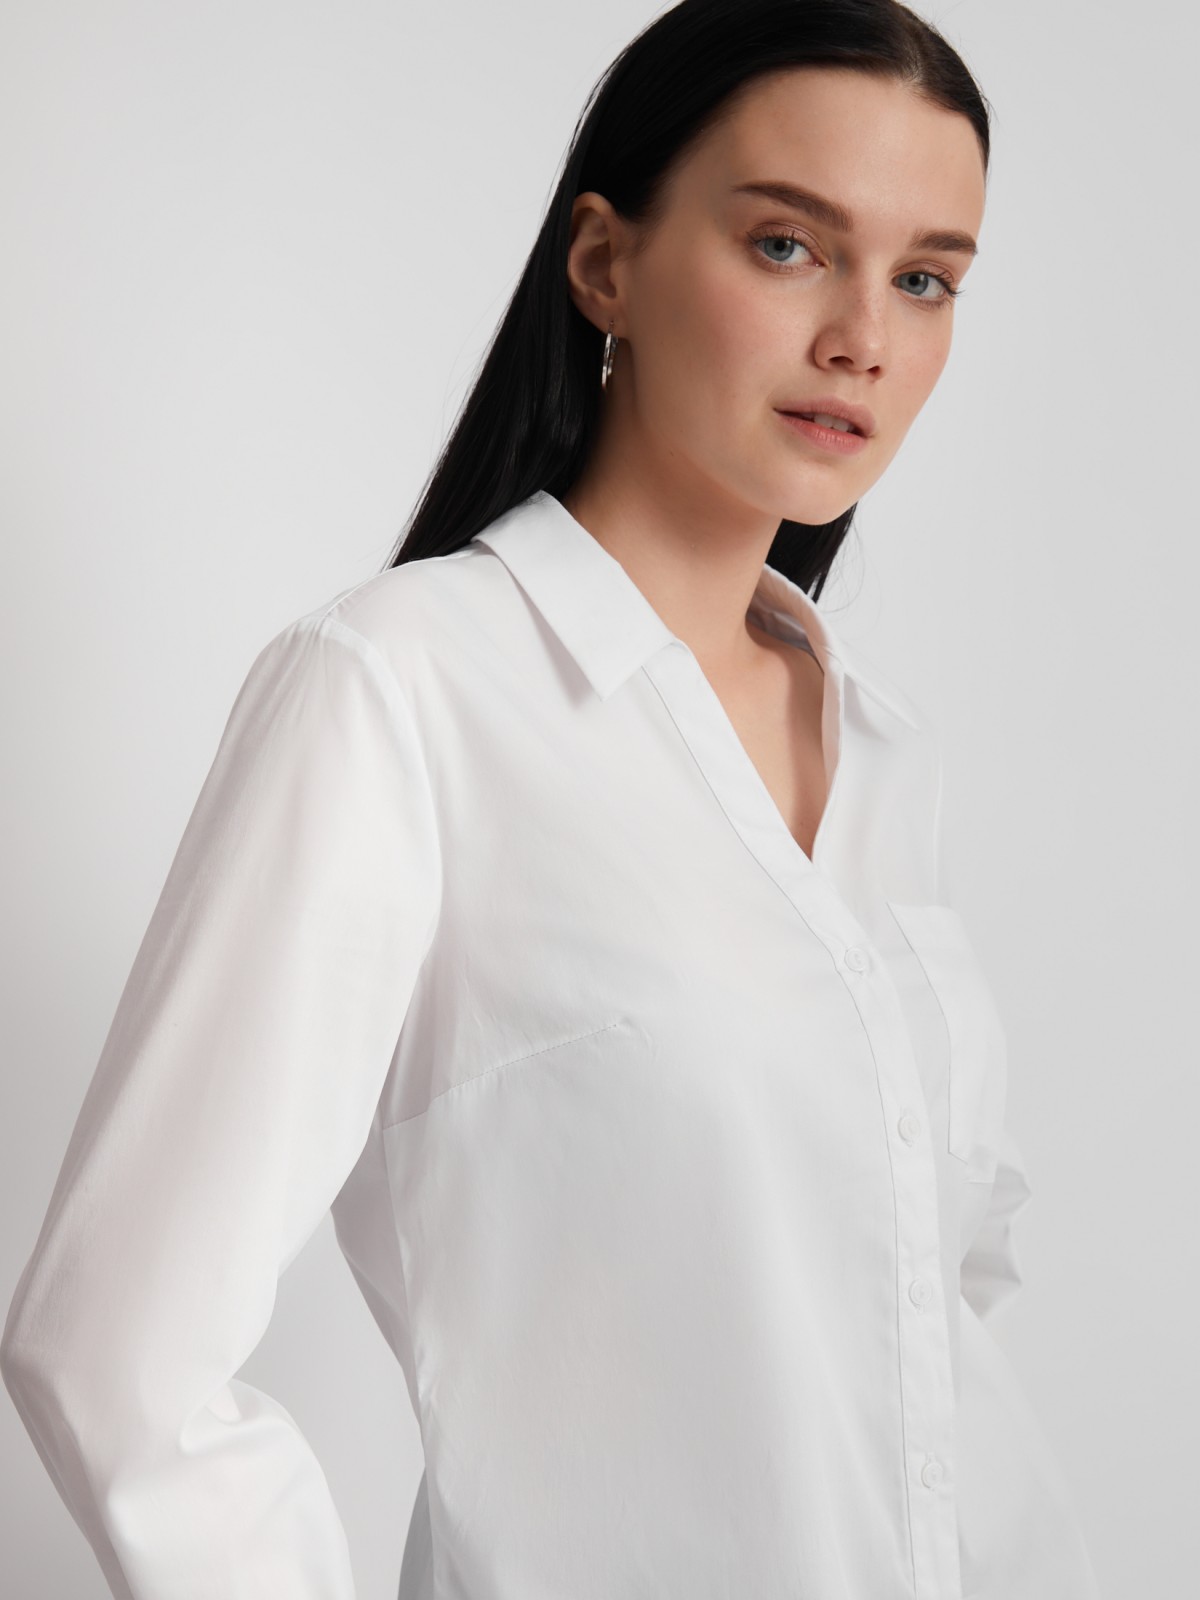 Офисная рубашка с вырезом и карманом zolla 023311159112, цвет белый, размер S - фото 3